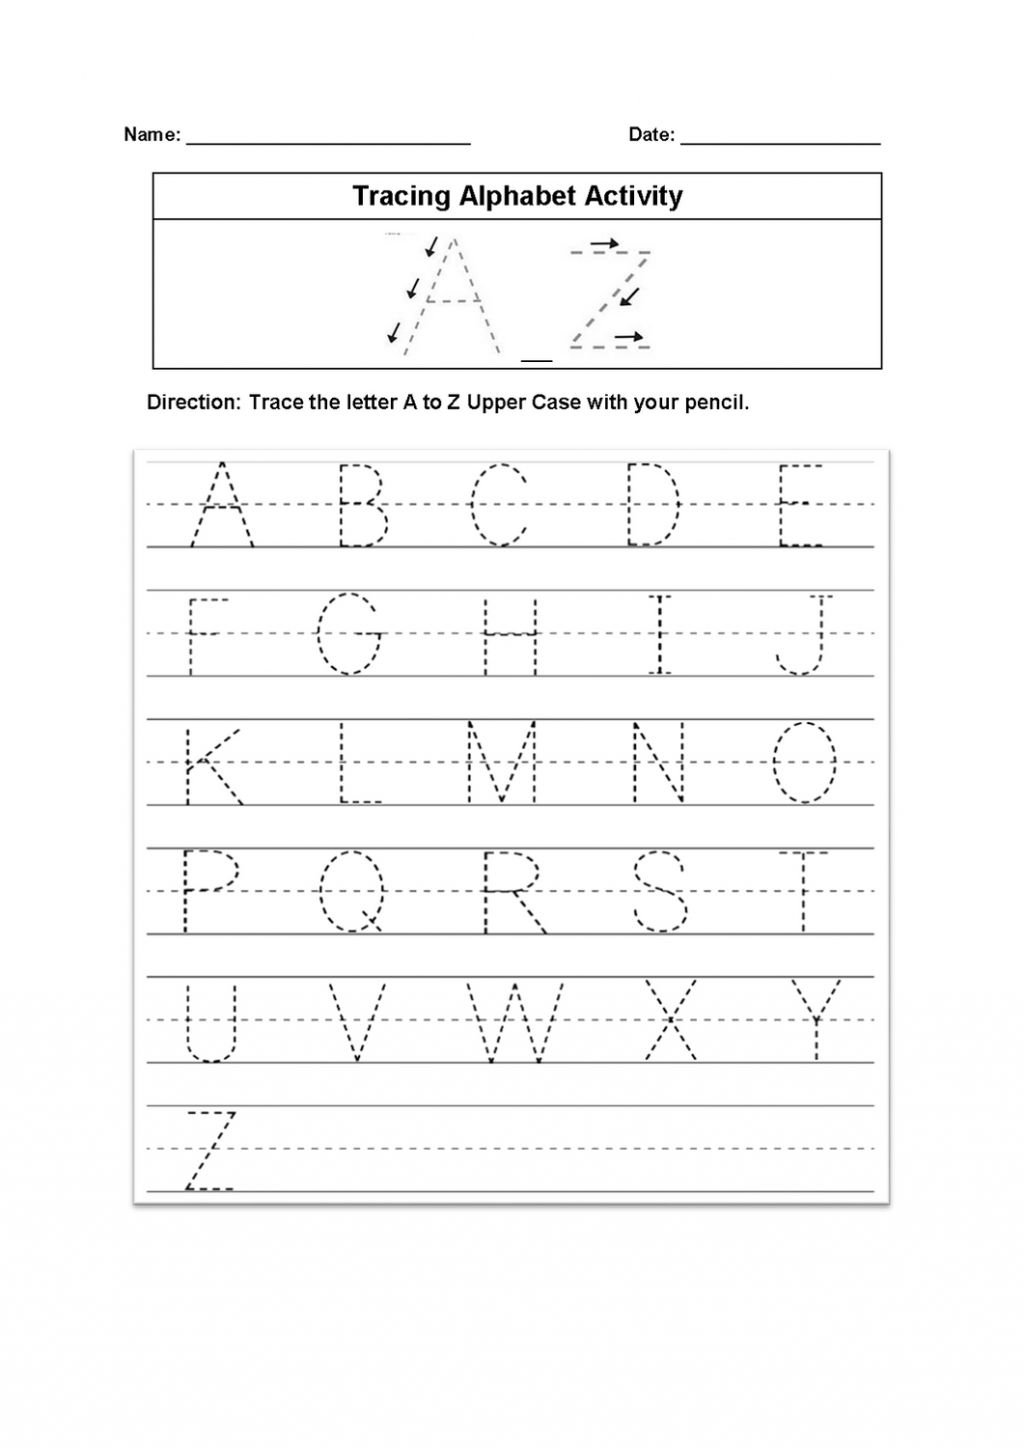 Worksheet ~ Tracing Alphabet Worksheet Worksheets Pdf With